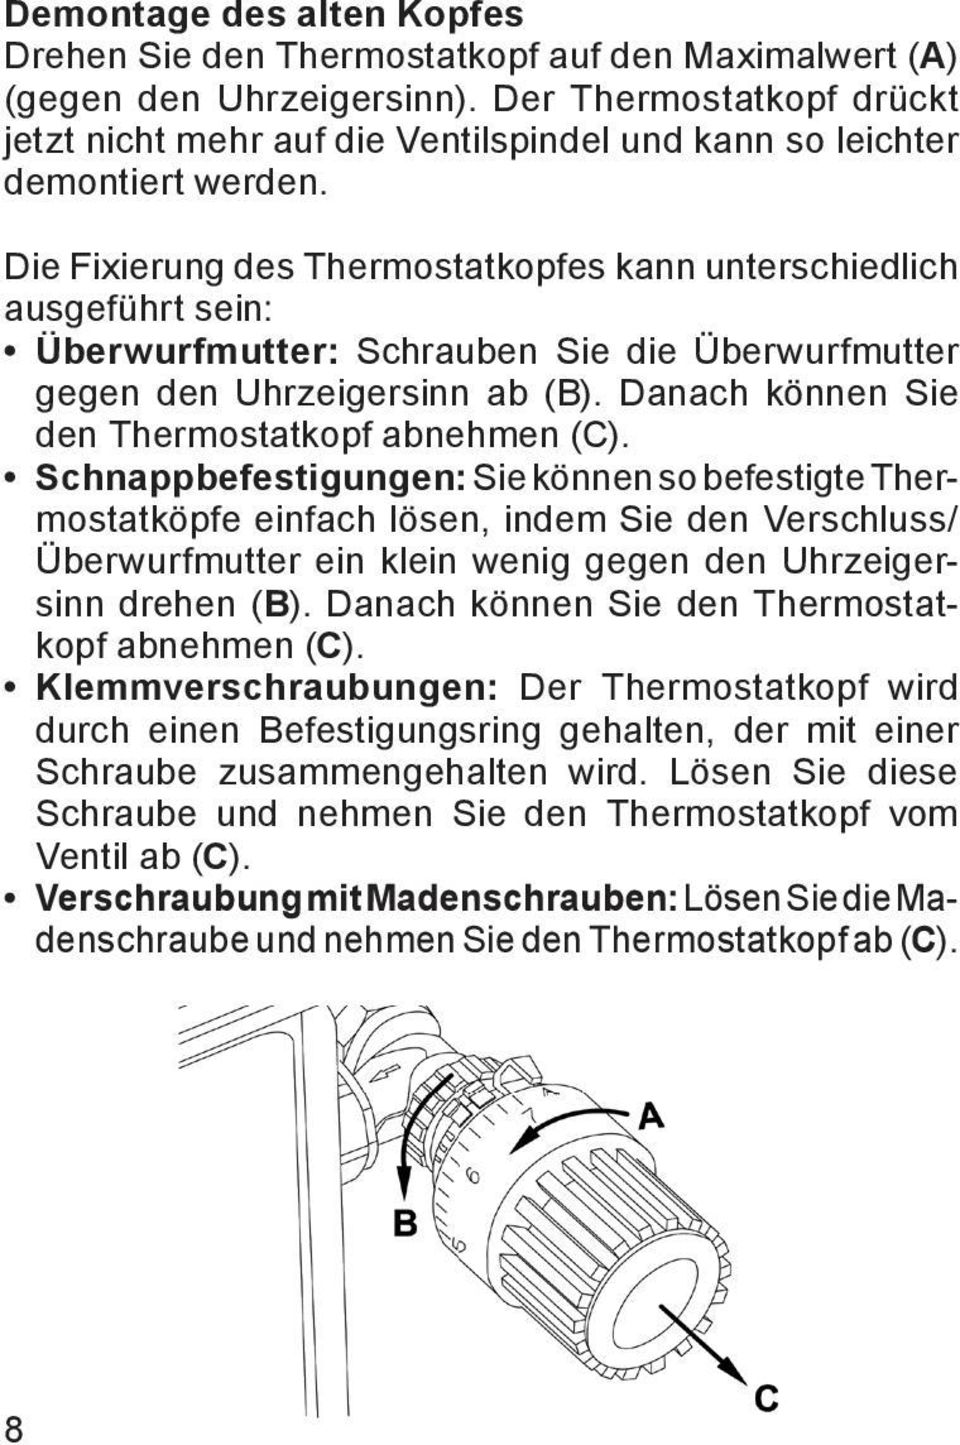 Die Fixierung des Thermostatkopfes kann unterschiedlich ausgeführt sein: Überwurfmutter: Schrauben Sie die Überwurfmutter gegen den Uhrzeigersinn ab (B).